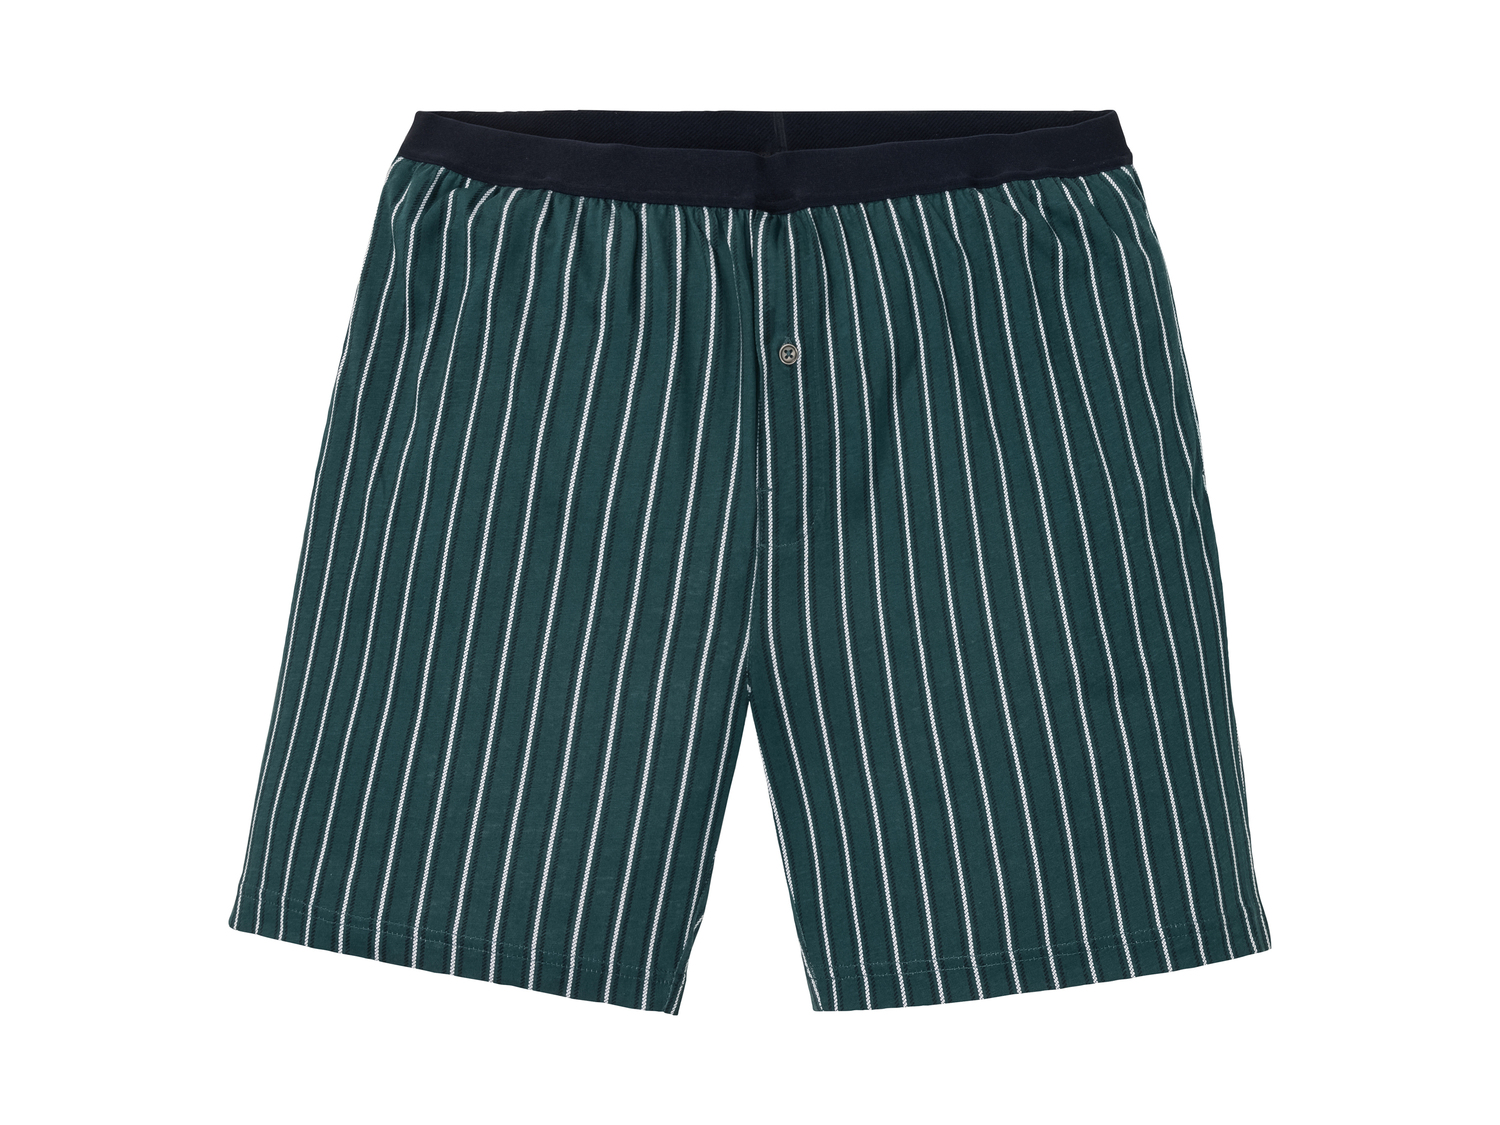 Pantaloni pigiama da uomo Livergy, prezzo 3.99 € 
Misure: S-XXL 
- Puro cotone
Prodotto ...